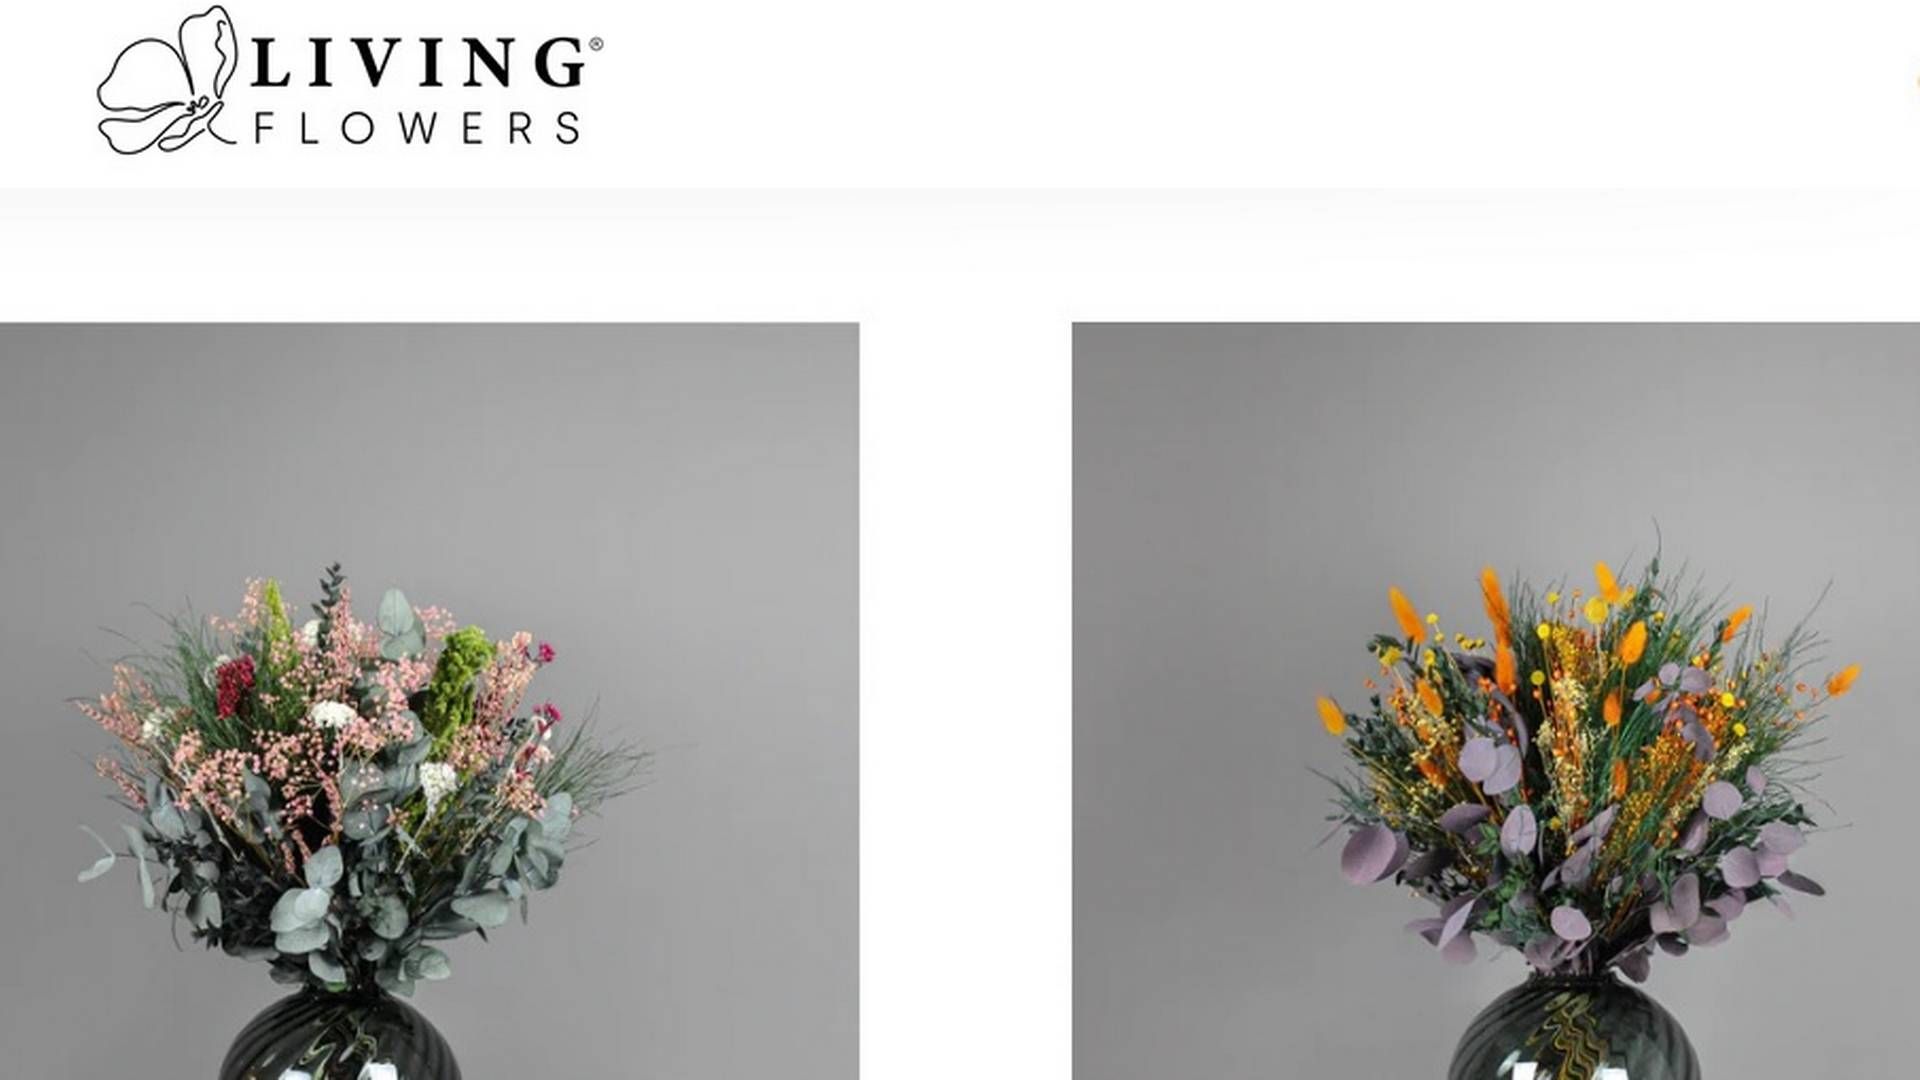 Living Flowers holder til i Hinnerup ved Aarhus, men har onlinesalg til hele Skandinavien.